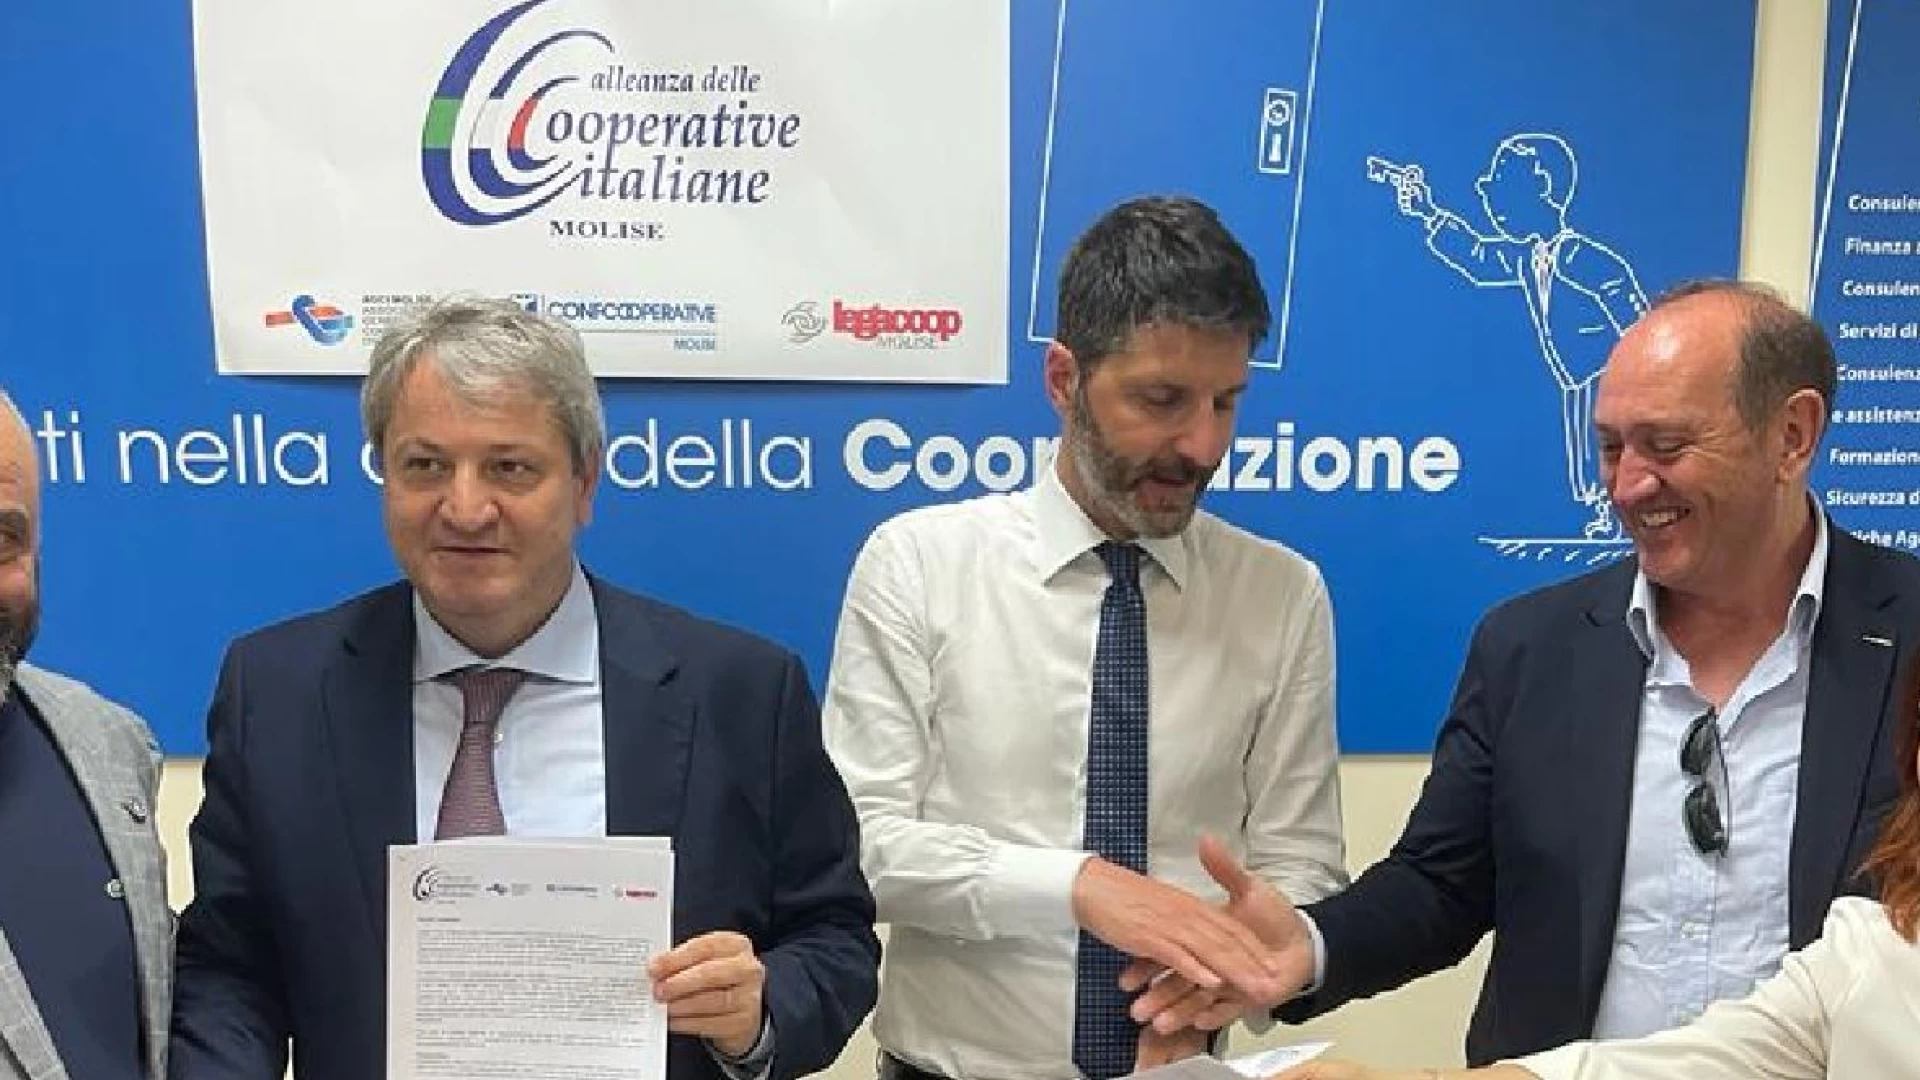 Partecipazione e “aria nuova” dopo l’incontro tra i candidati promosso dall’Alleanza delle Cooperative Italiane a Campobasso.